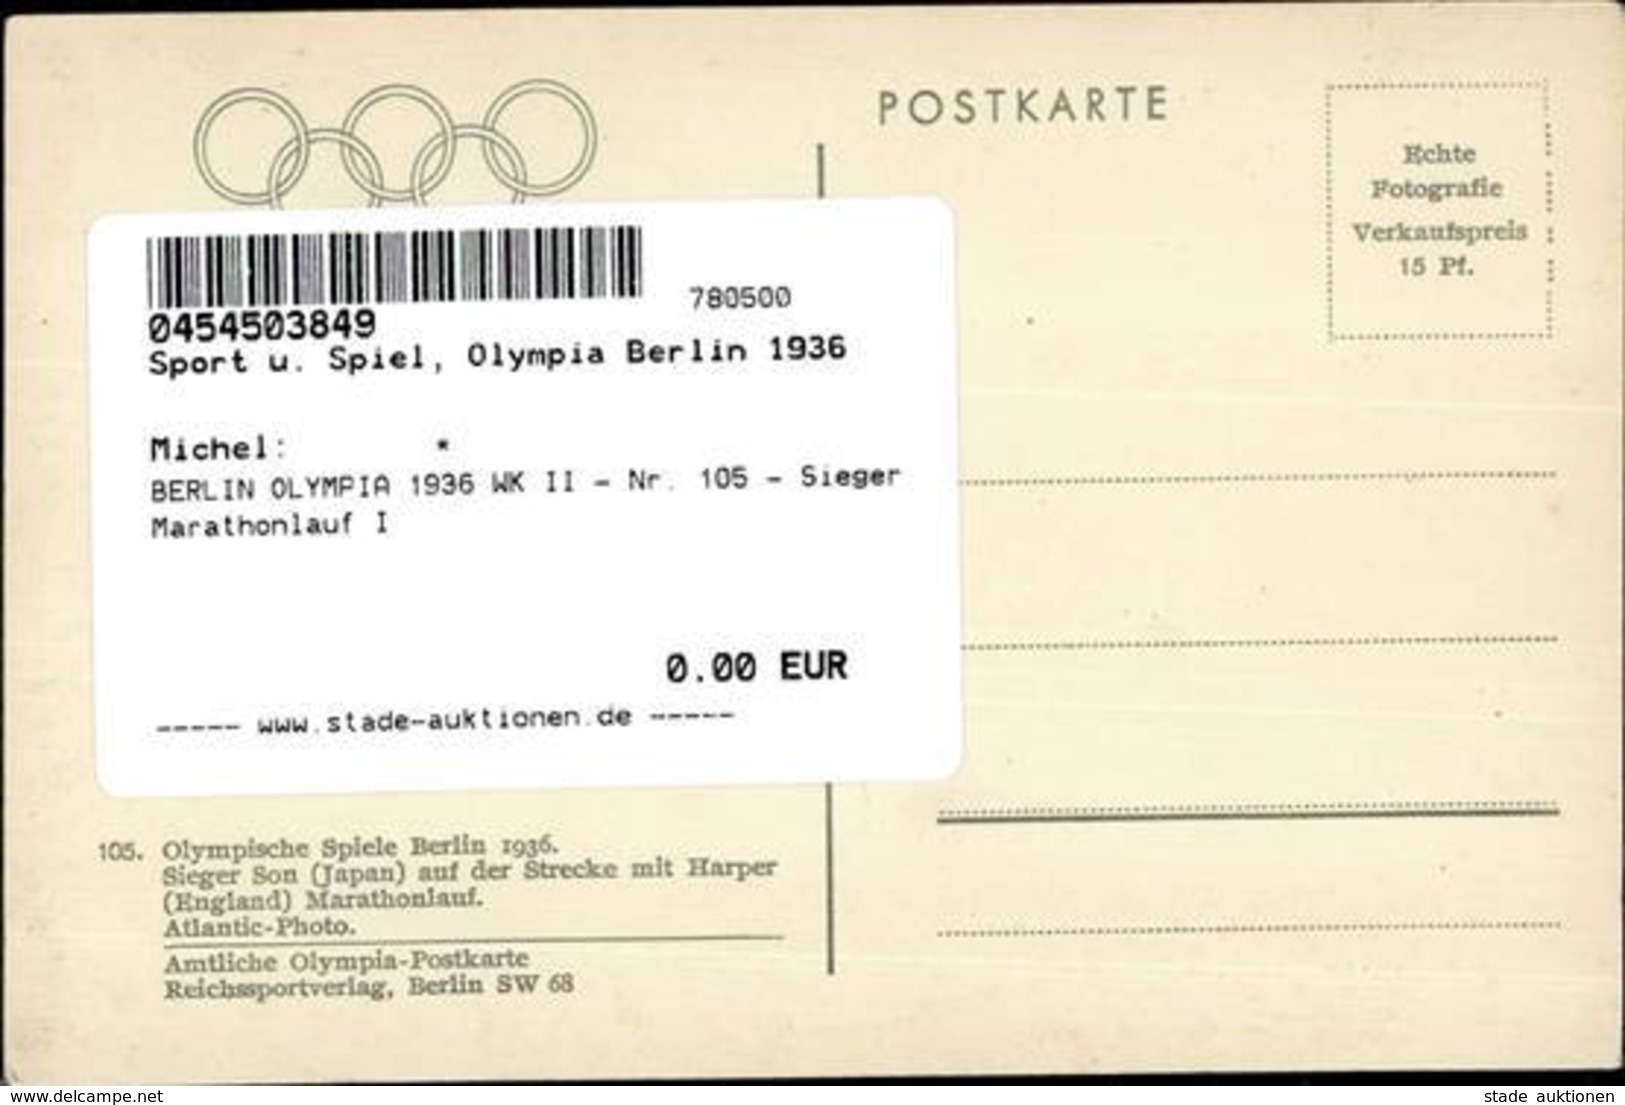 BERLIN OLYMPIA 1936 WK II - Nr. 105 - Sieger Marathonlauf I - Giochi Olimpici